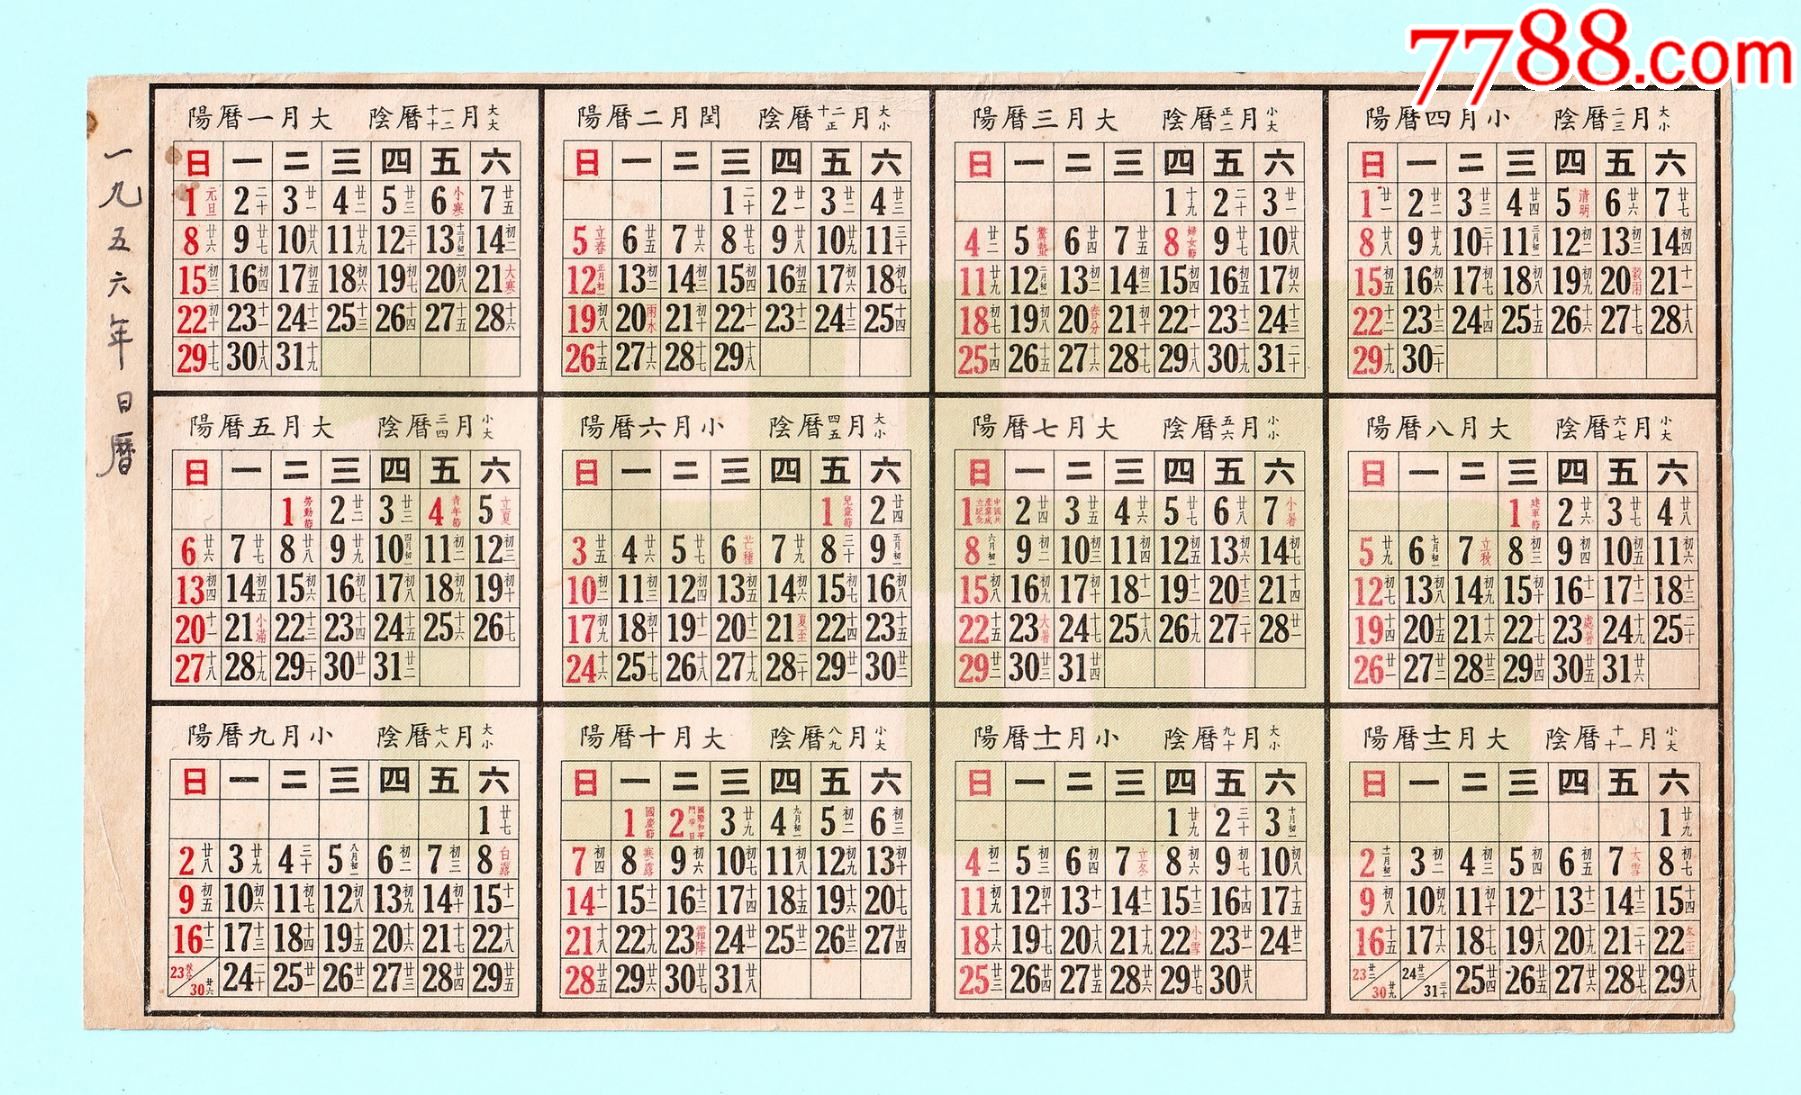 1956年全年日历,纸质,繁体字,单面印刷